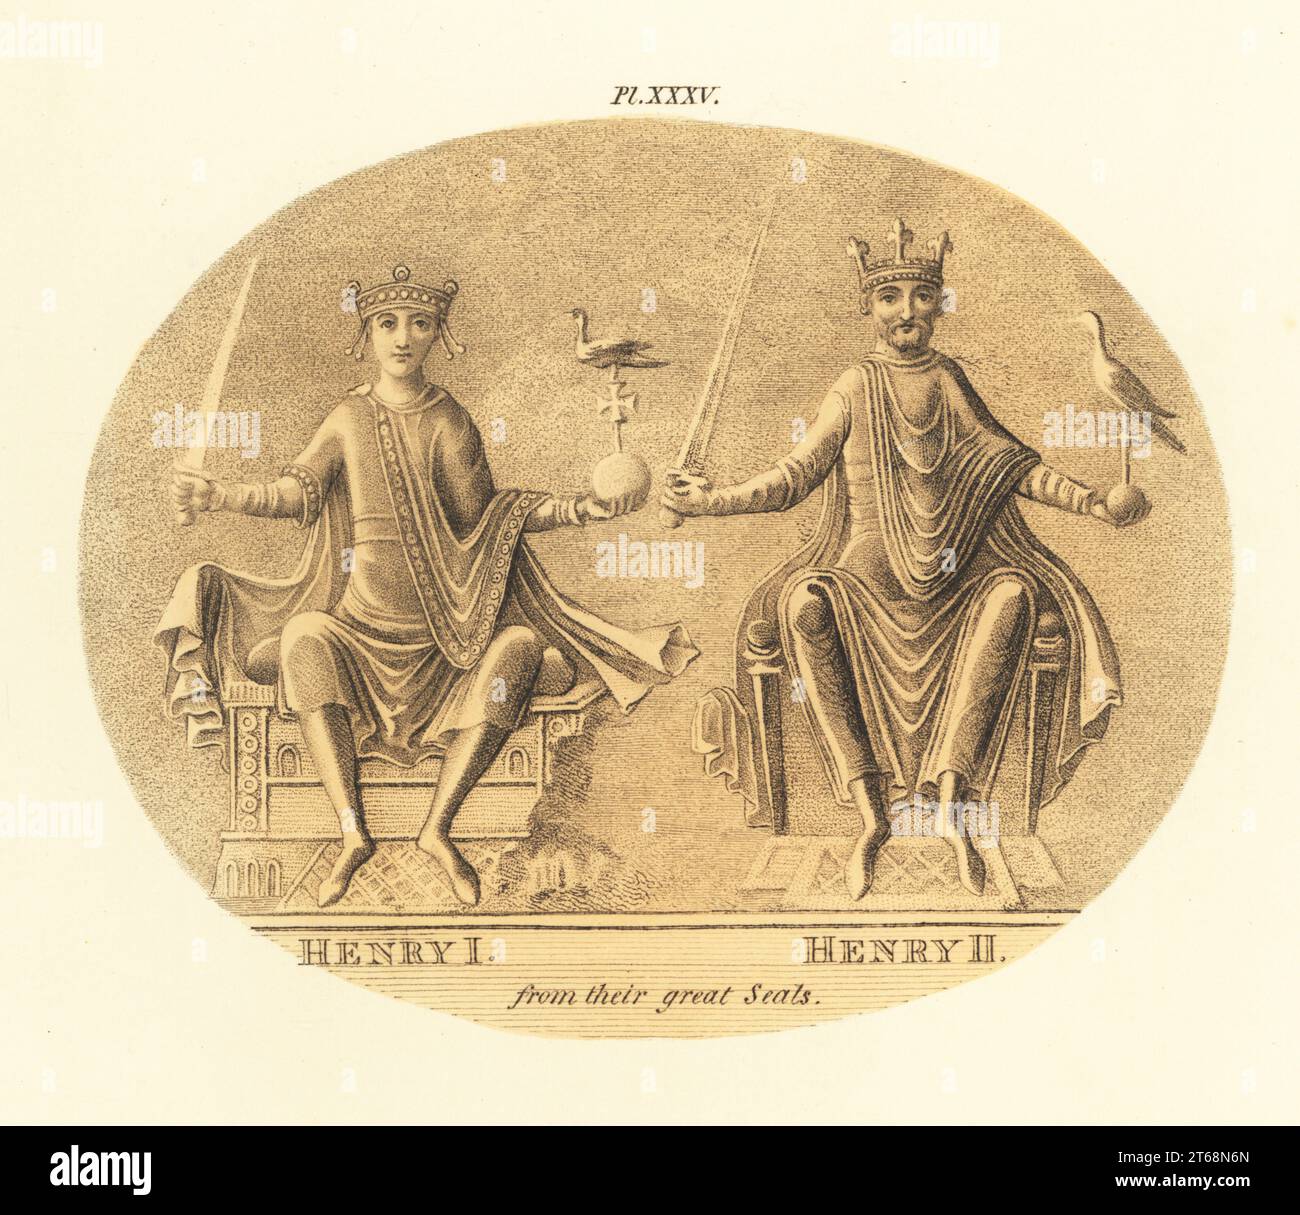 Le roi Henri I (1068-1135) et le roi Henri II (1133-1189) d'Angleterre, de leurs grands phoques. Dans la couronne, le manteau, la tunique, assis sur le trône avec l'épée et l'orbe. Gravure teintée à la main par Joseph Strutt de sa vue complète de la robe et des habitudes du peuple d'Angleterre, Henry Bohn, Londres, 1842. Banque D'Images